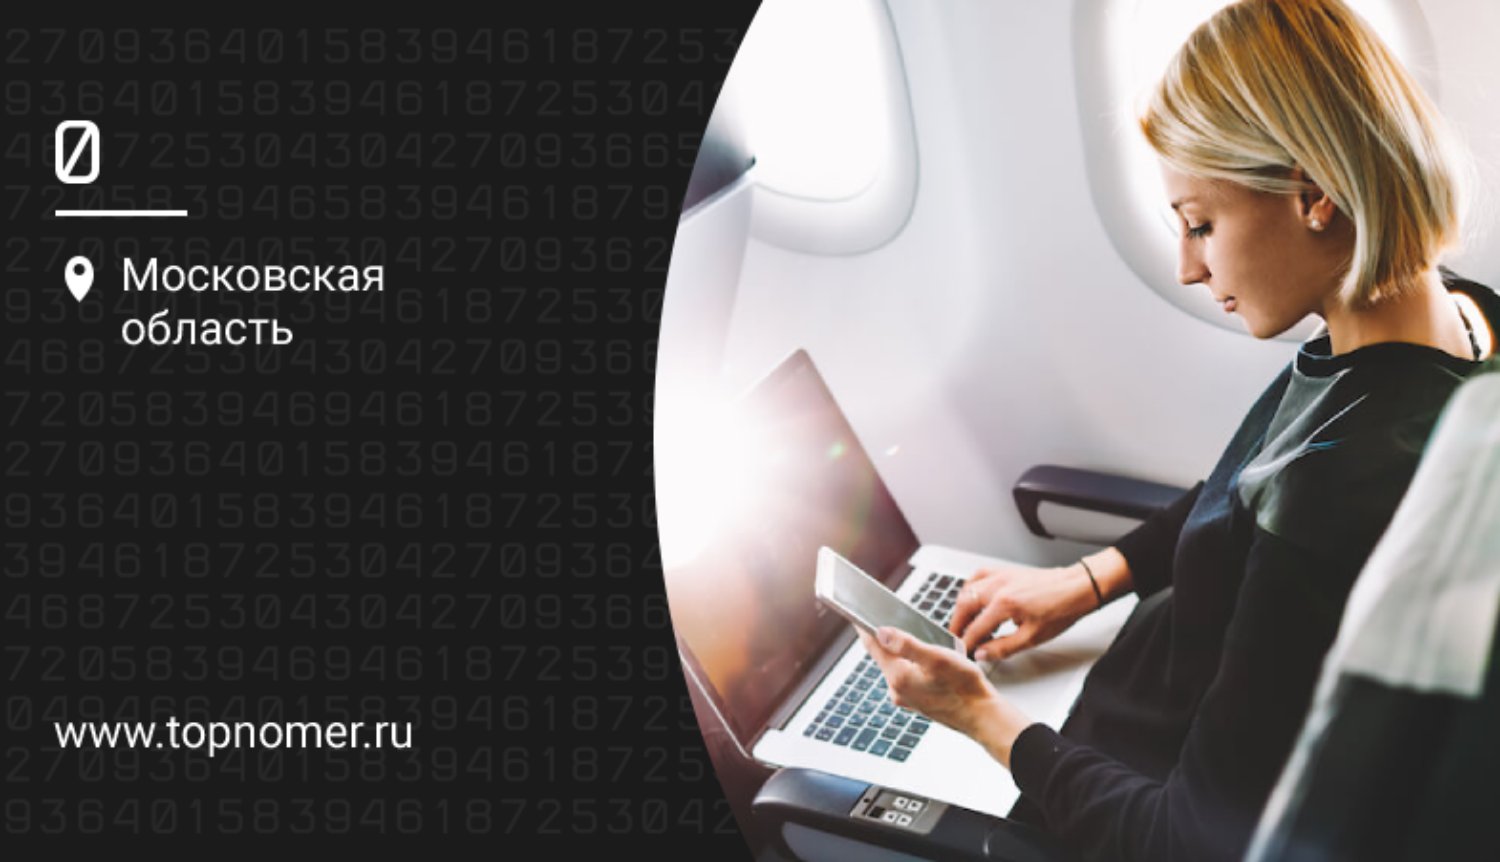 Интернет на борту самолета: сколько стоит и как подключить